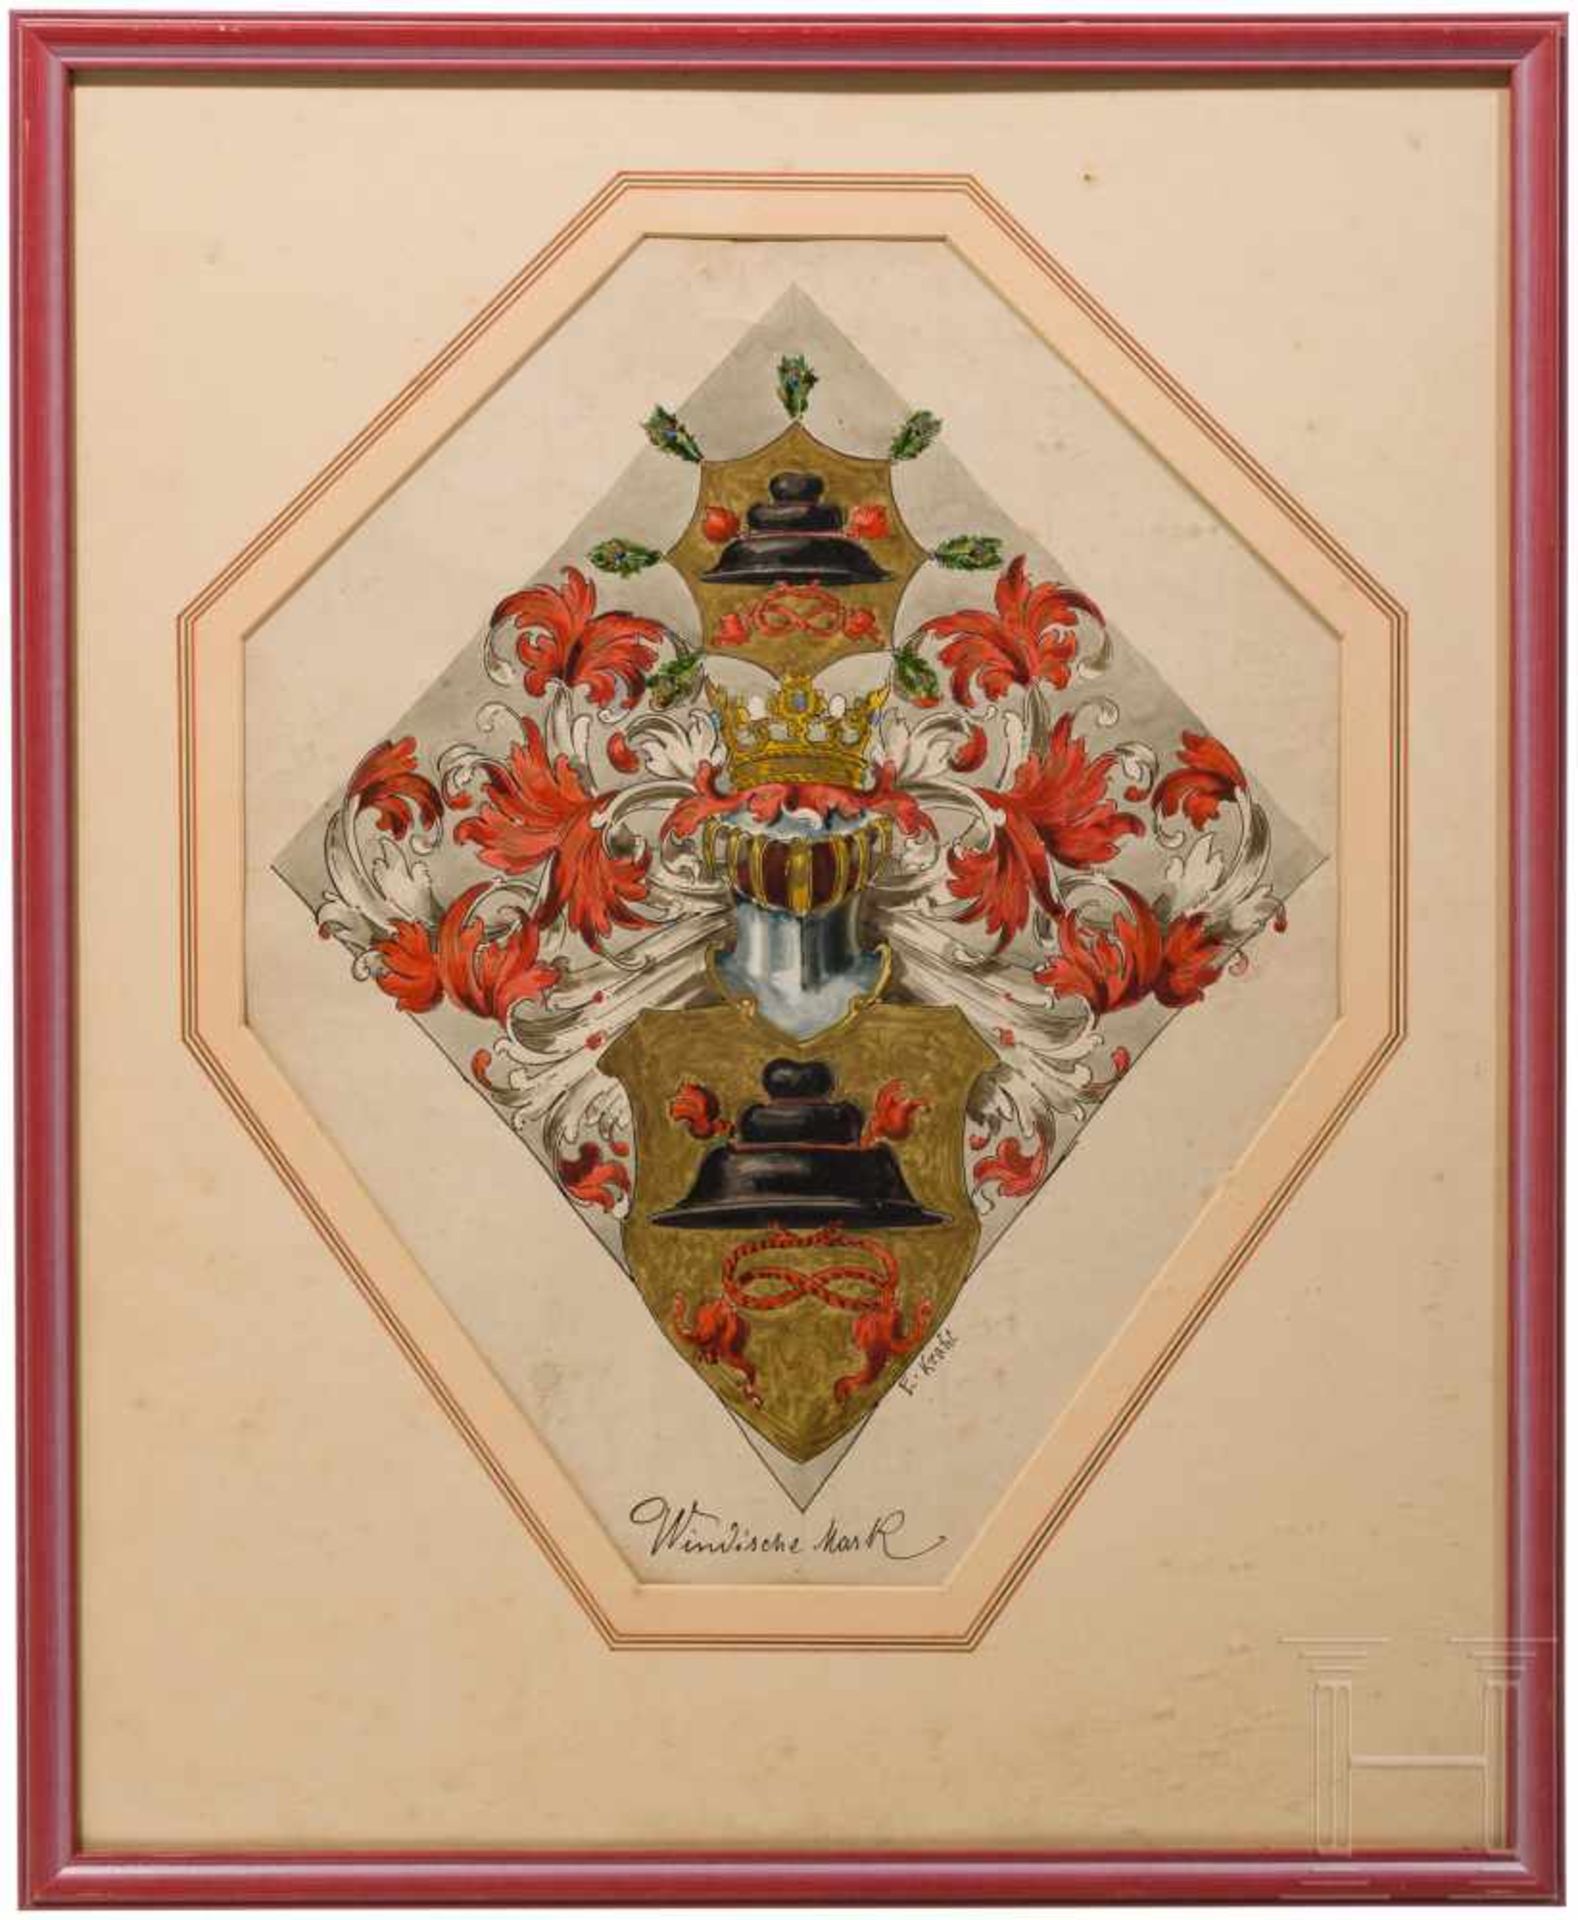 Ernst Krahl (1858 - 1923) - Coat of arms of the Windische MarkAquarell mit Weißhöhung auf Papier.